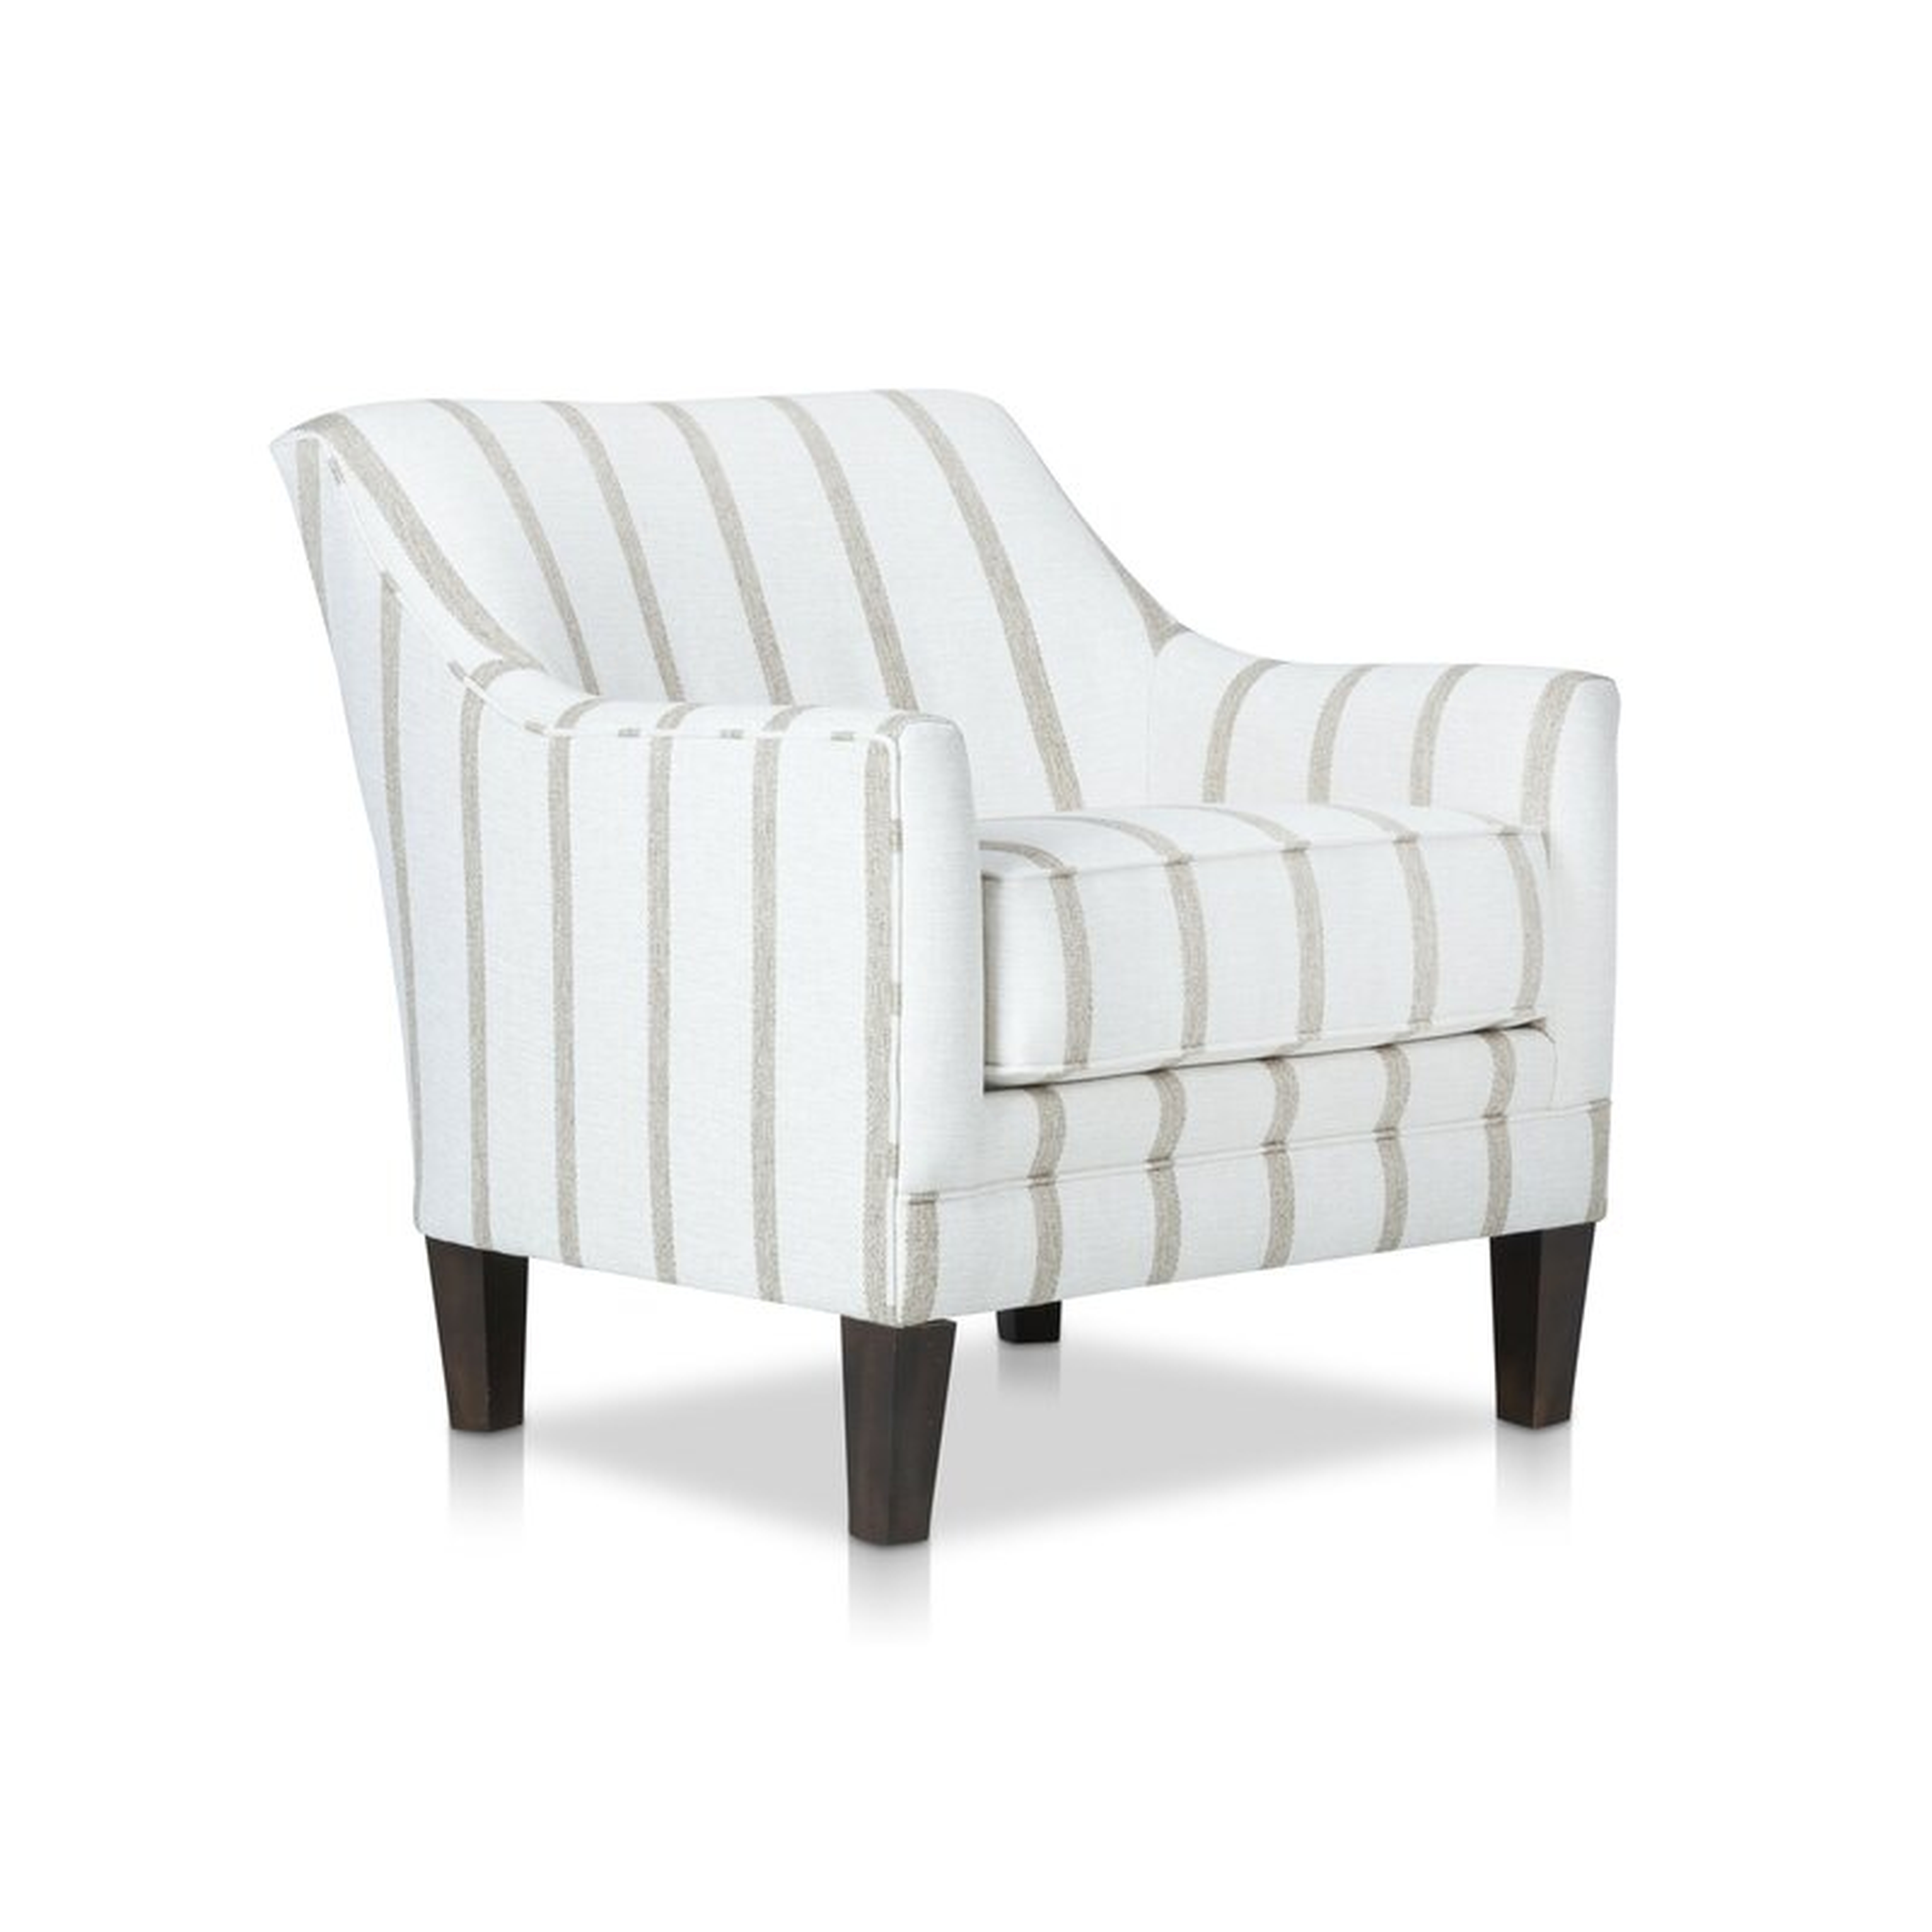 Stone & Leigh Furniture Katelyn Stationary 22" Armchair Fabric: Cream - Perigold